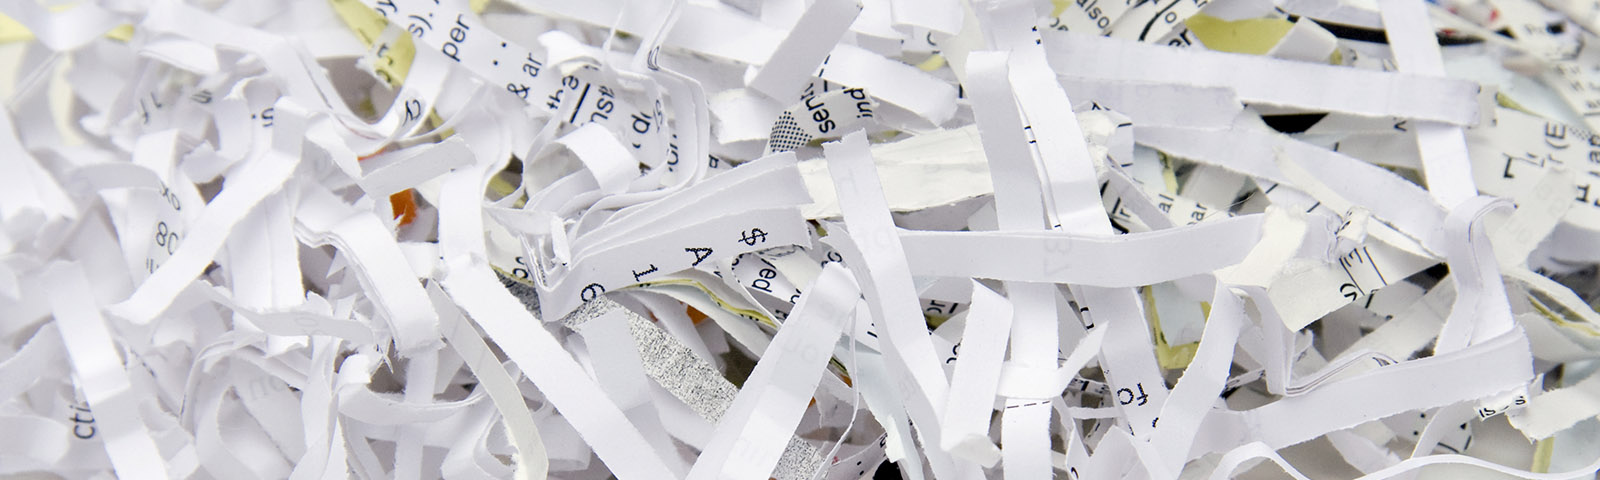 Strips of shredded paper